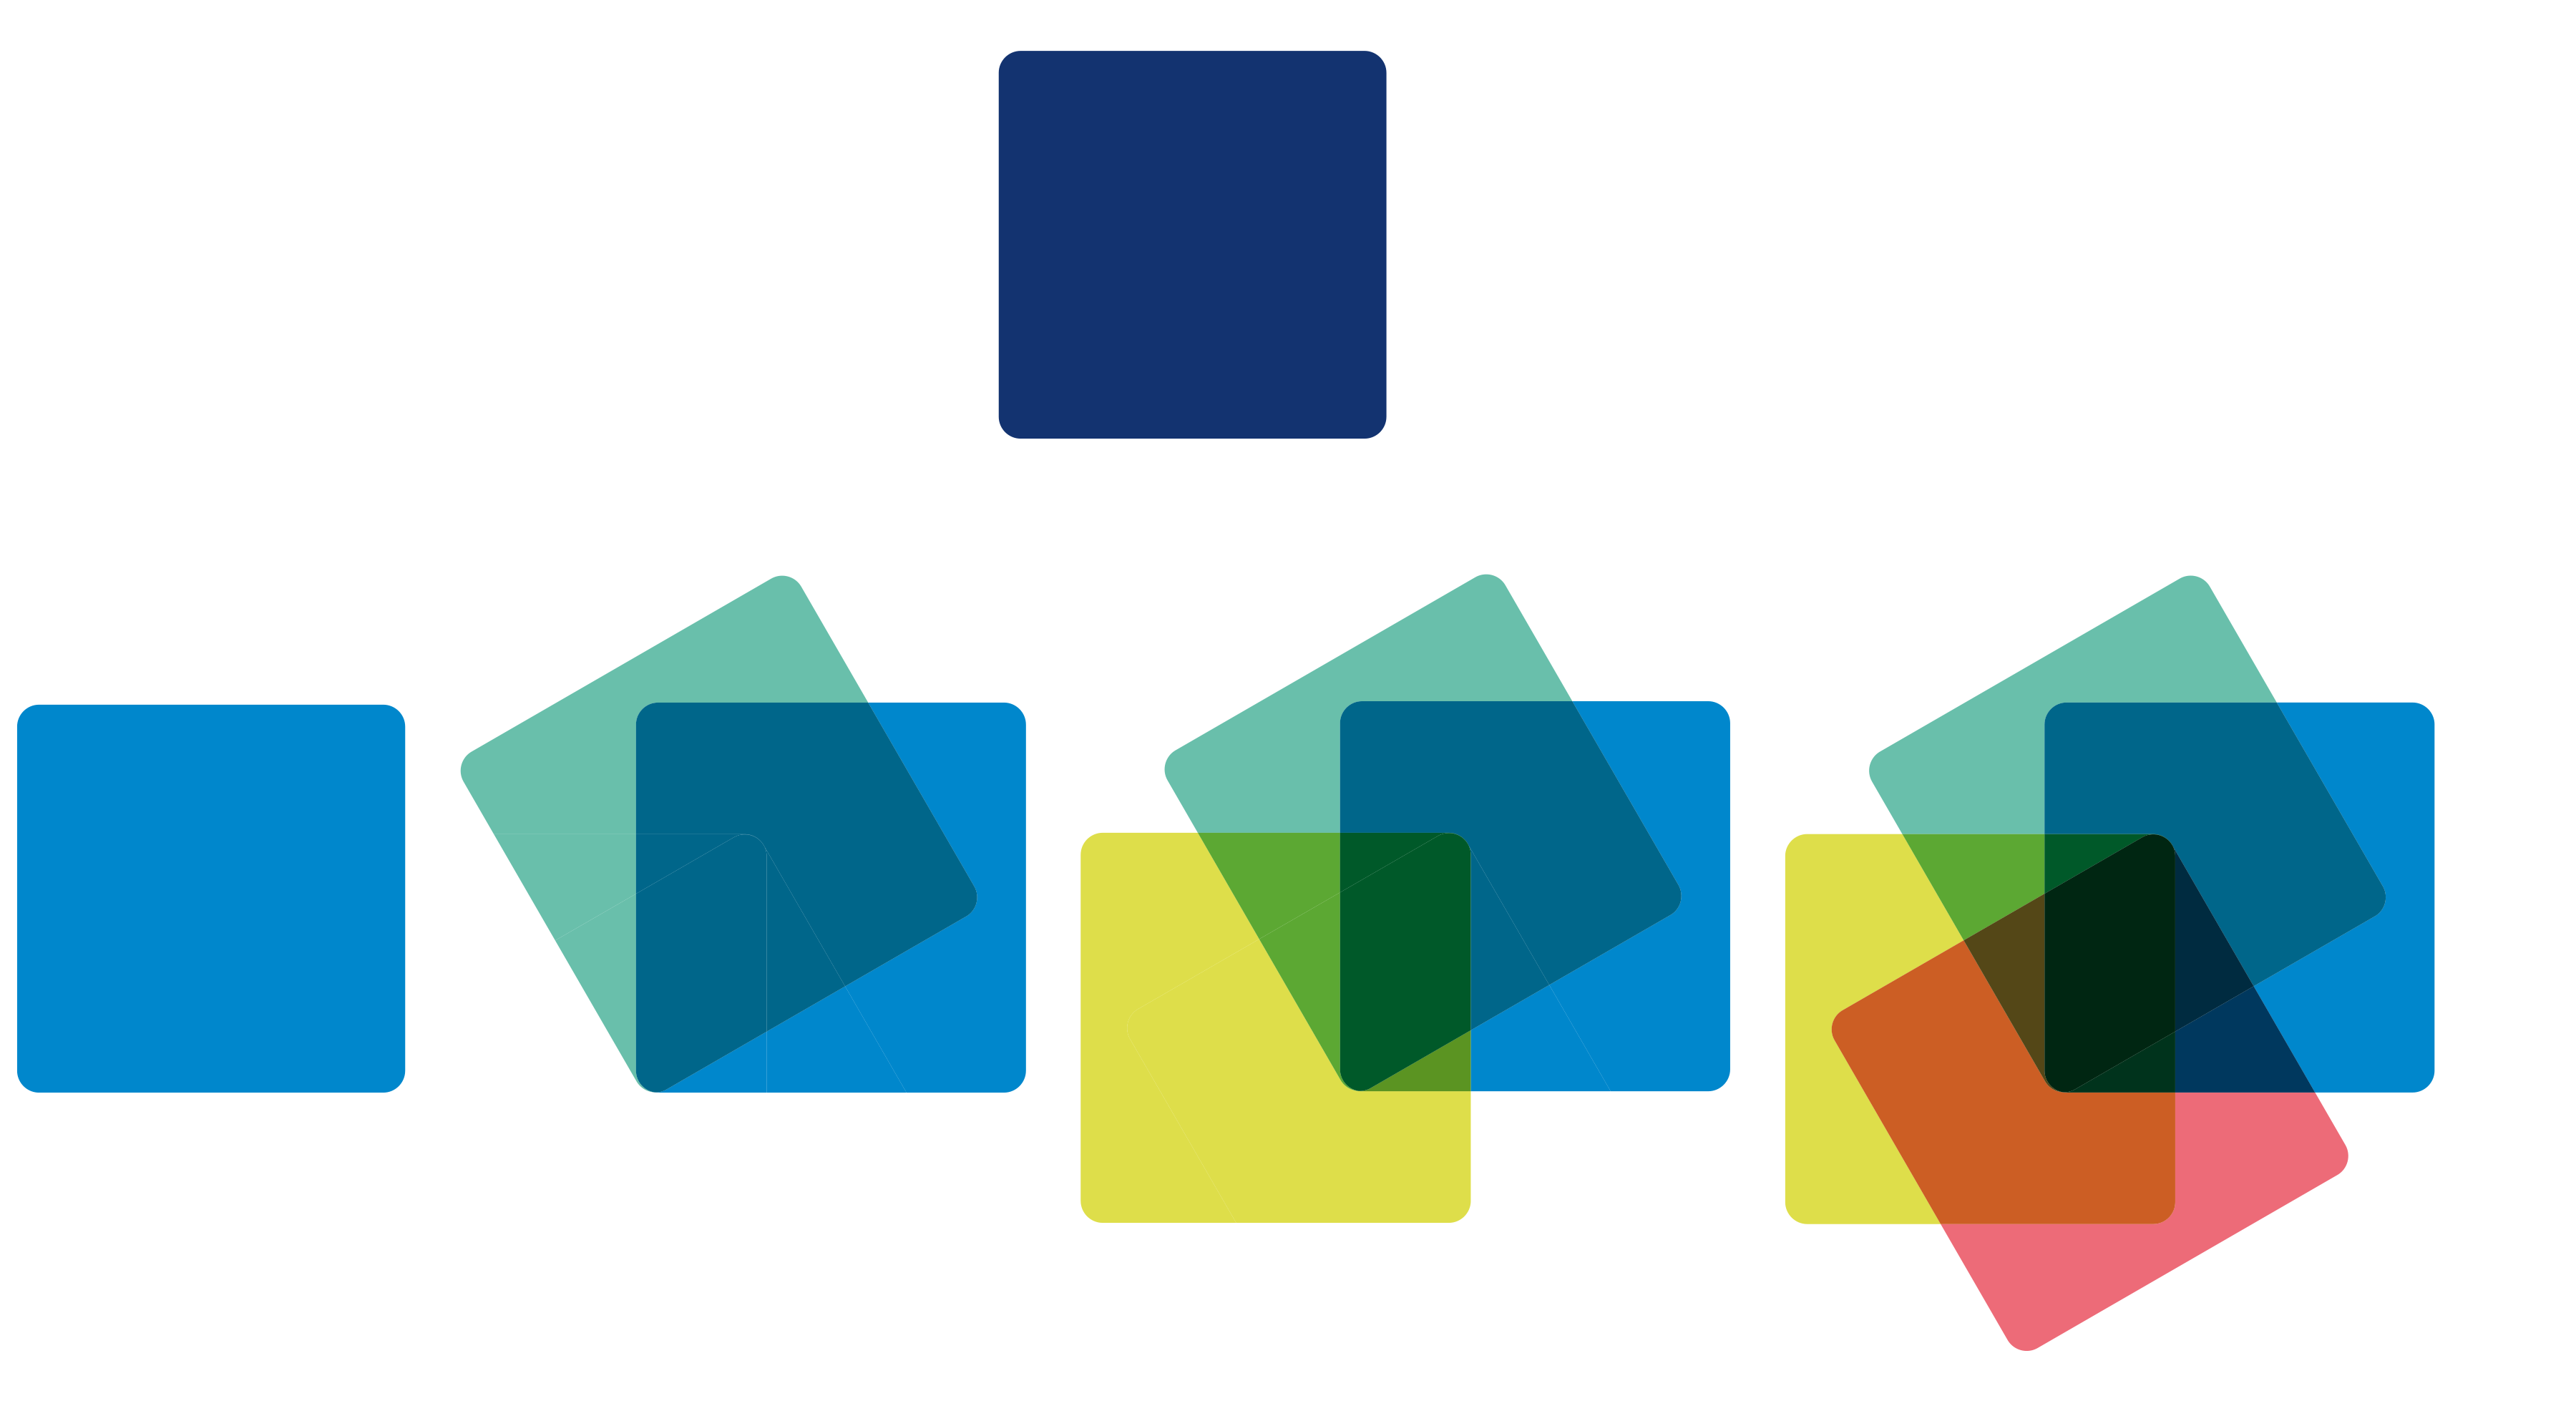 Darstellung Ableitung der Bildmarke im neuen JenaKultur-Logo, aus dem einen Quadrat der Jena Lichtstadt werden 4 bunte Quadrate, die sich überlappen